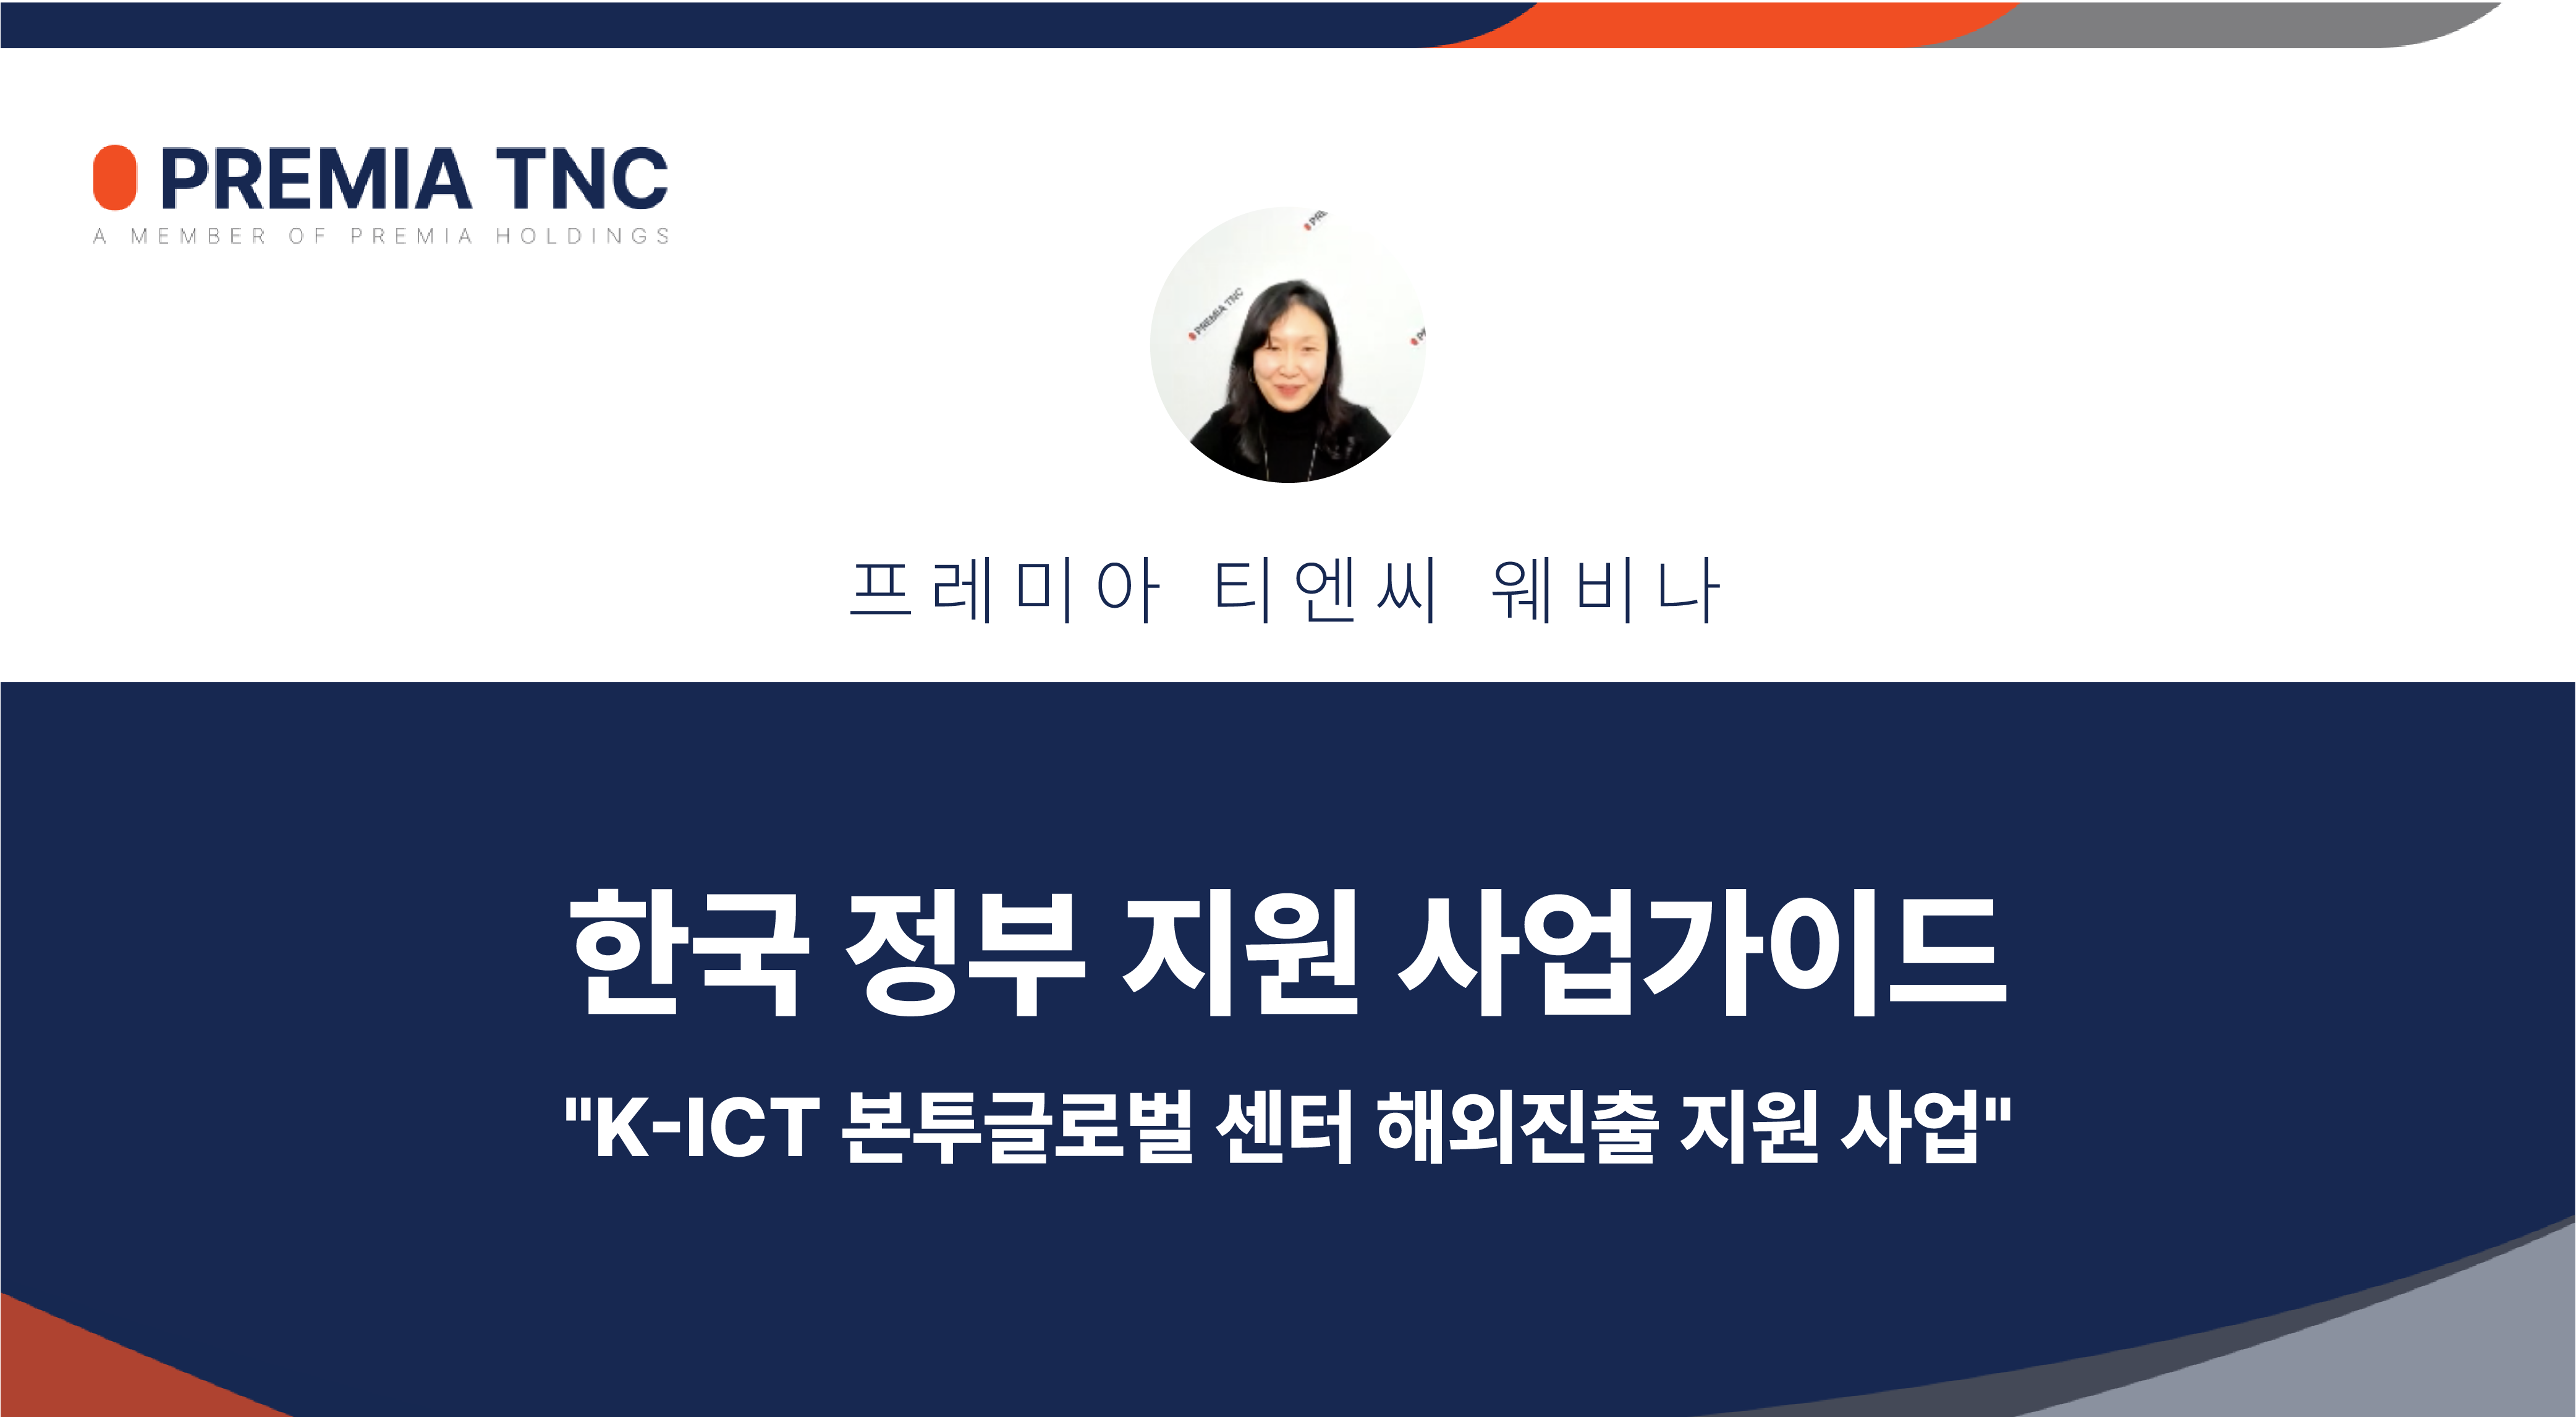 한국 정부 지원 사업 가이드 "K-ICT 본투글로벌 센터 해외 진출 사업 가이드"